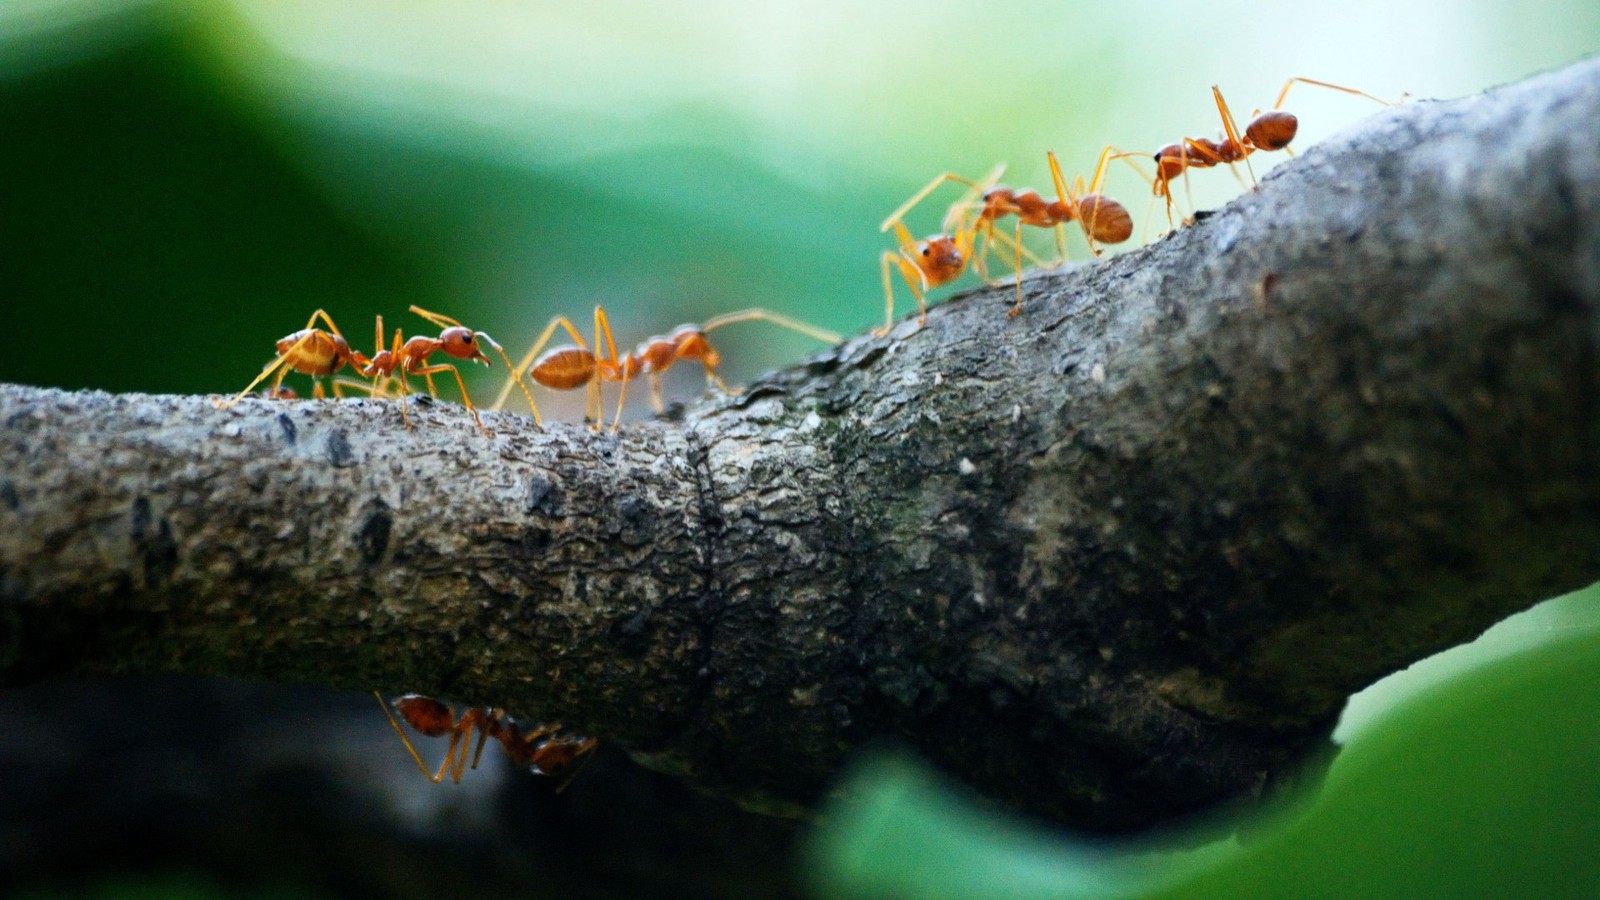 Naukowcy odwzorowali zachowanie mrówek w roju robotów. Efekty są zaskakujące